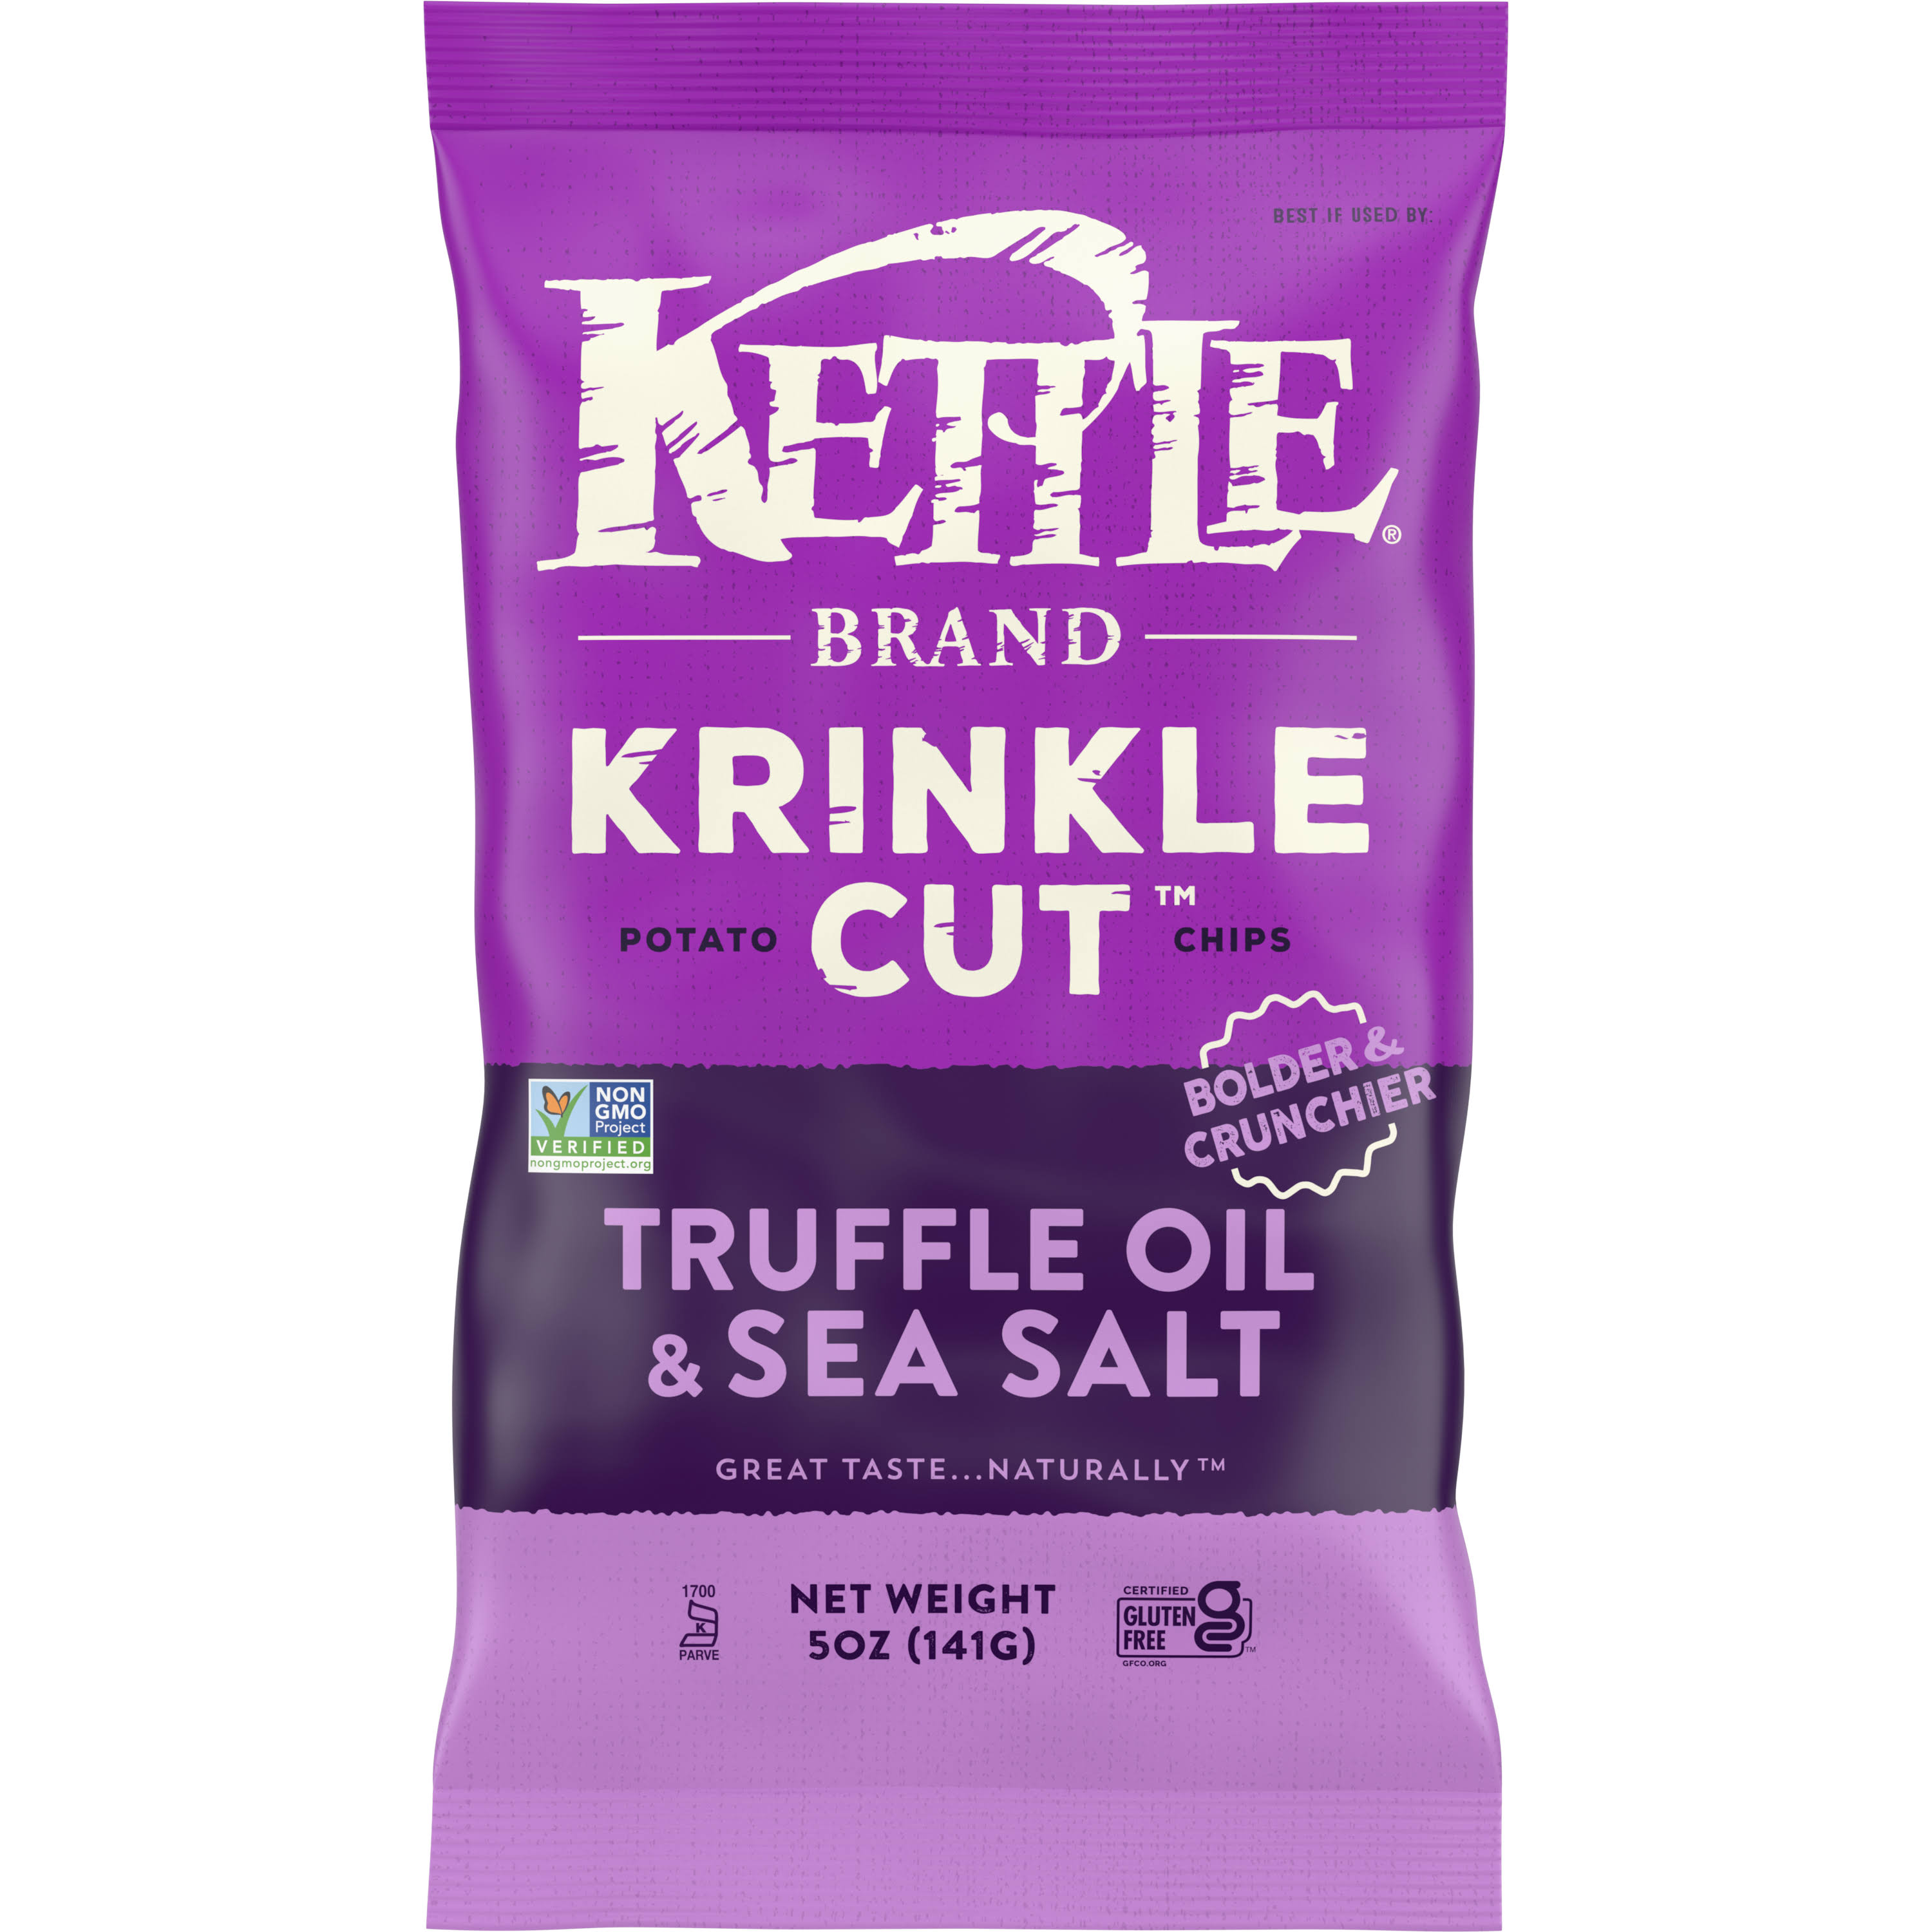 Kettle Brand Krinkle Cut Potato Chips, Truffle Oil & Sea Salt - 5 oz